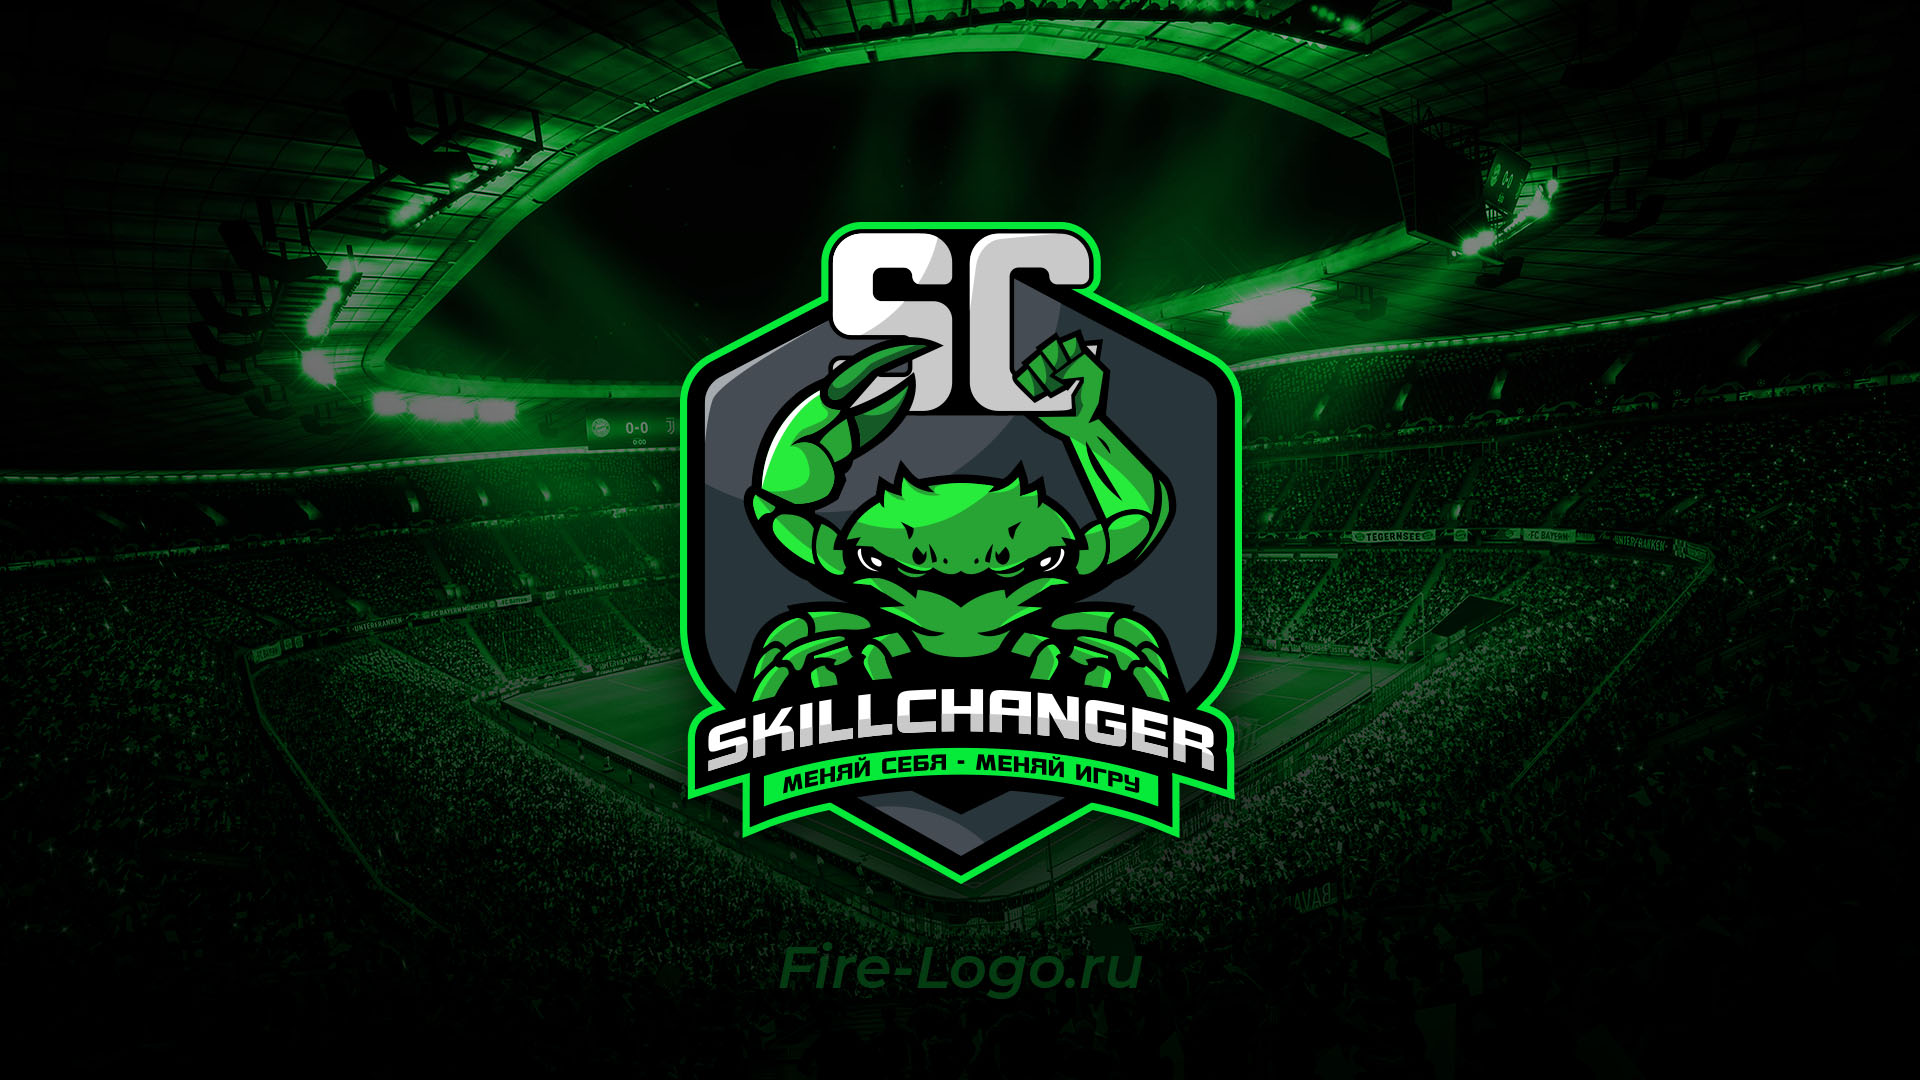 Логотип онлайн школы по повышению скила в играх Fifa и EA FC - SkillChanger